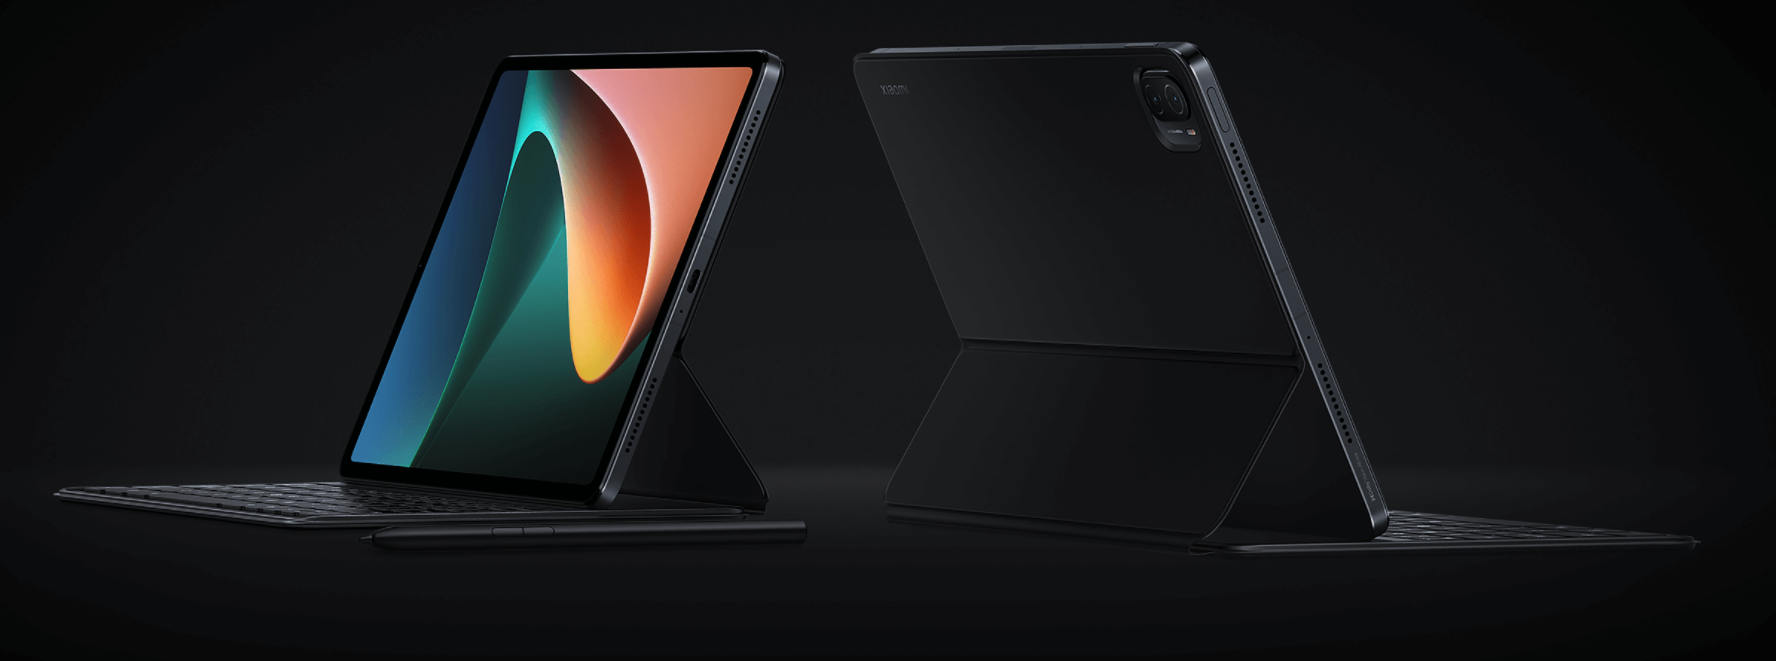 Xiaomi Mi Pad 5 i Mi Pad 5 Pro tablety zaprezentowane z nowym firmware w cenie od 310 dolarów